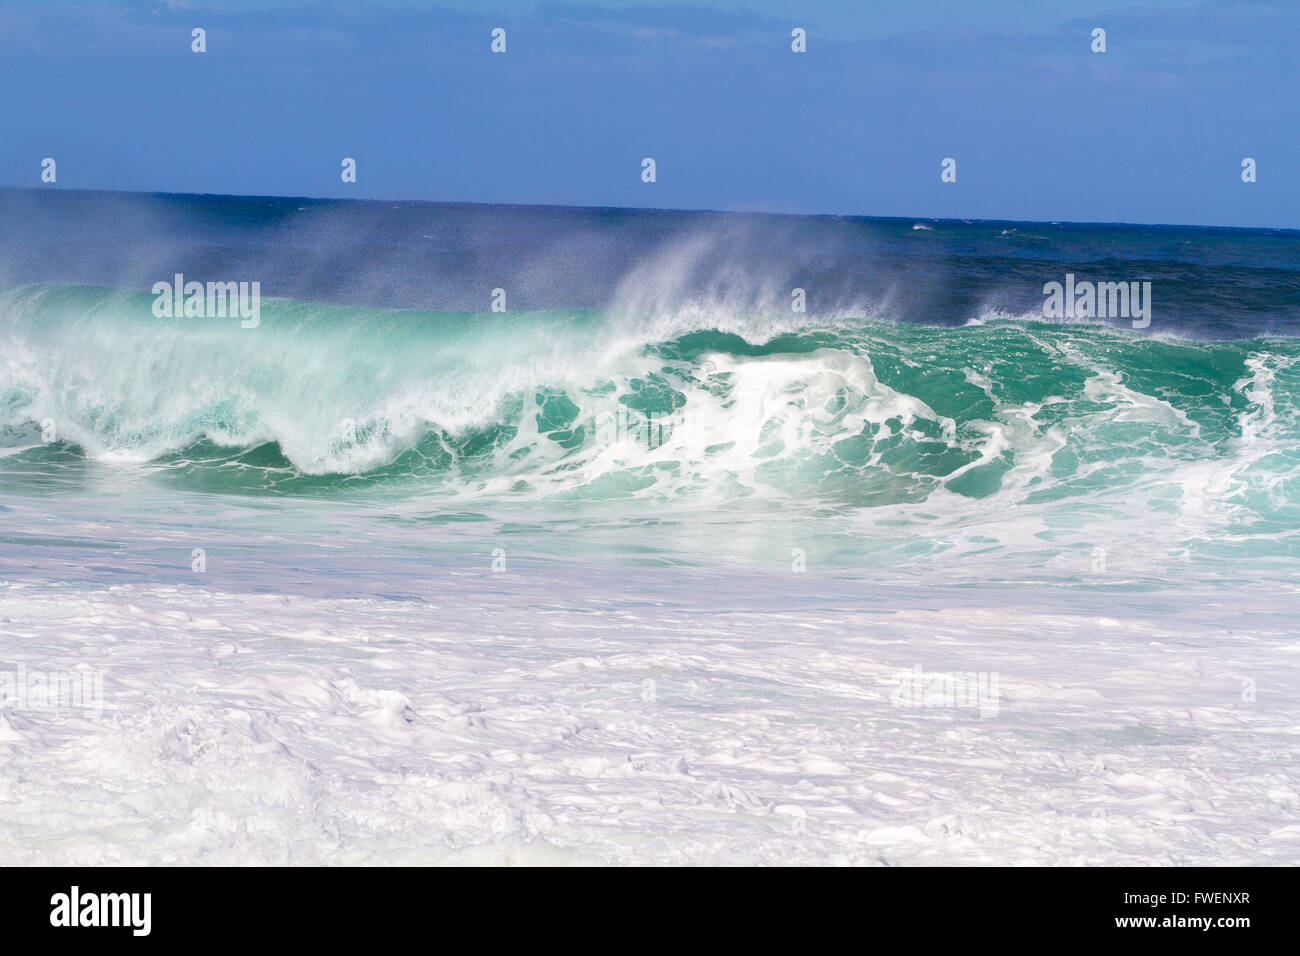 Queste onde gigantesche sono provenienti dalla serie e in piedi sopra i 20 metri di altezza. Il surf è pericoloso e le onde sono molto intimi Foto Stock